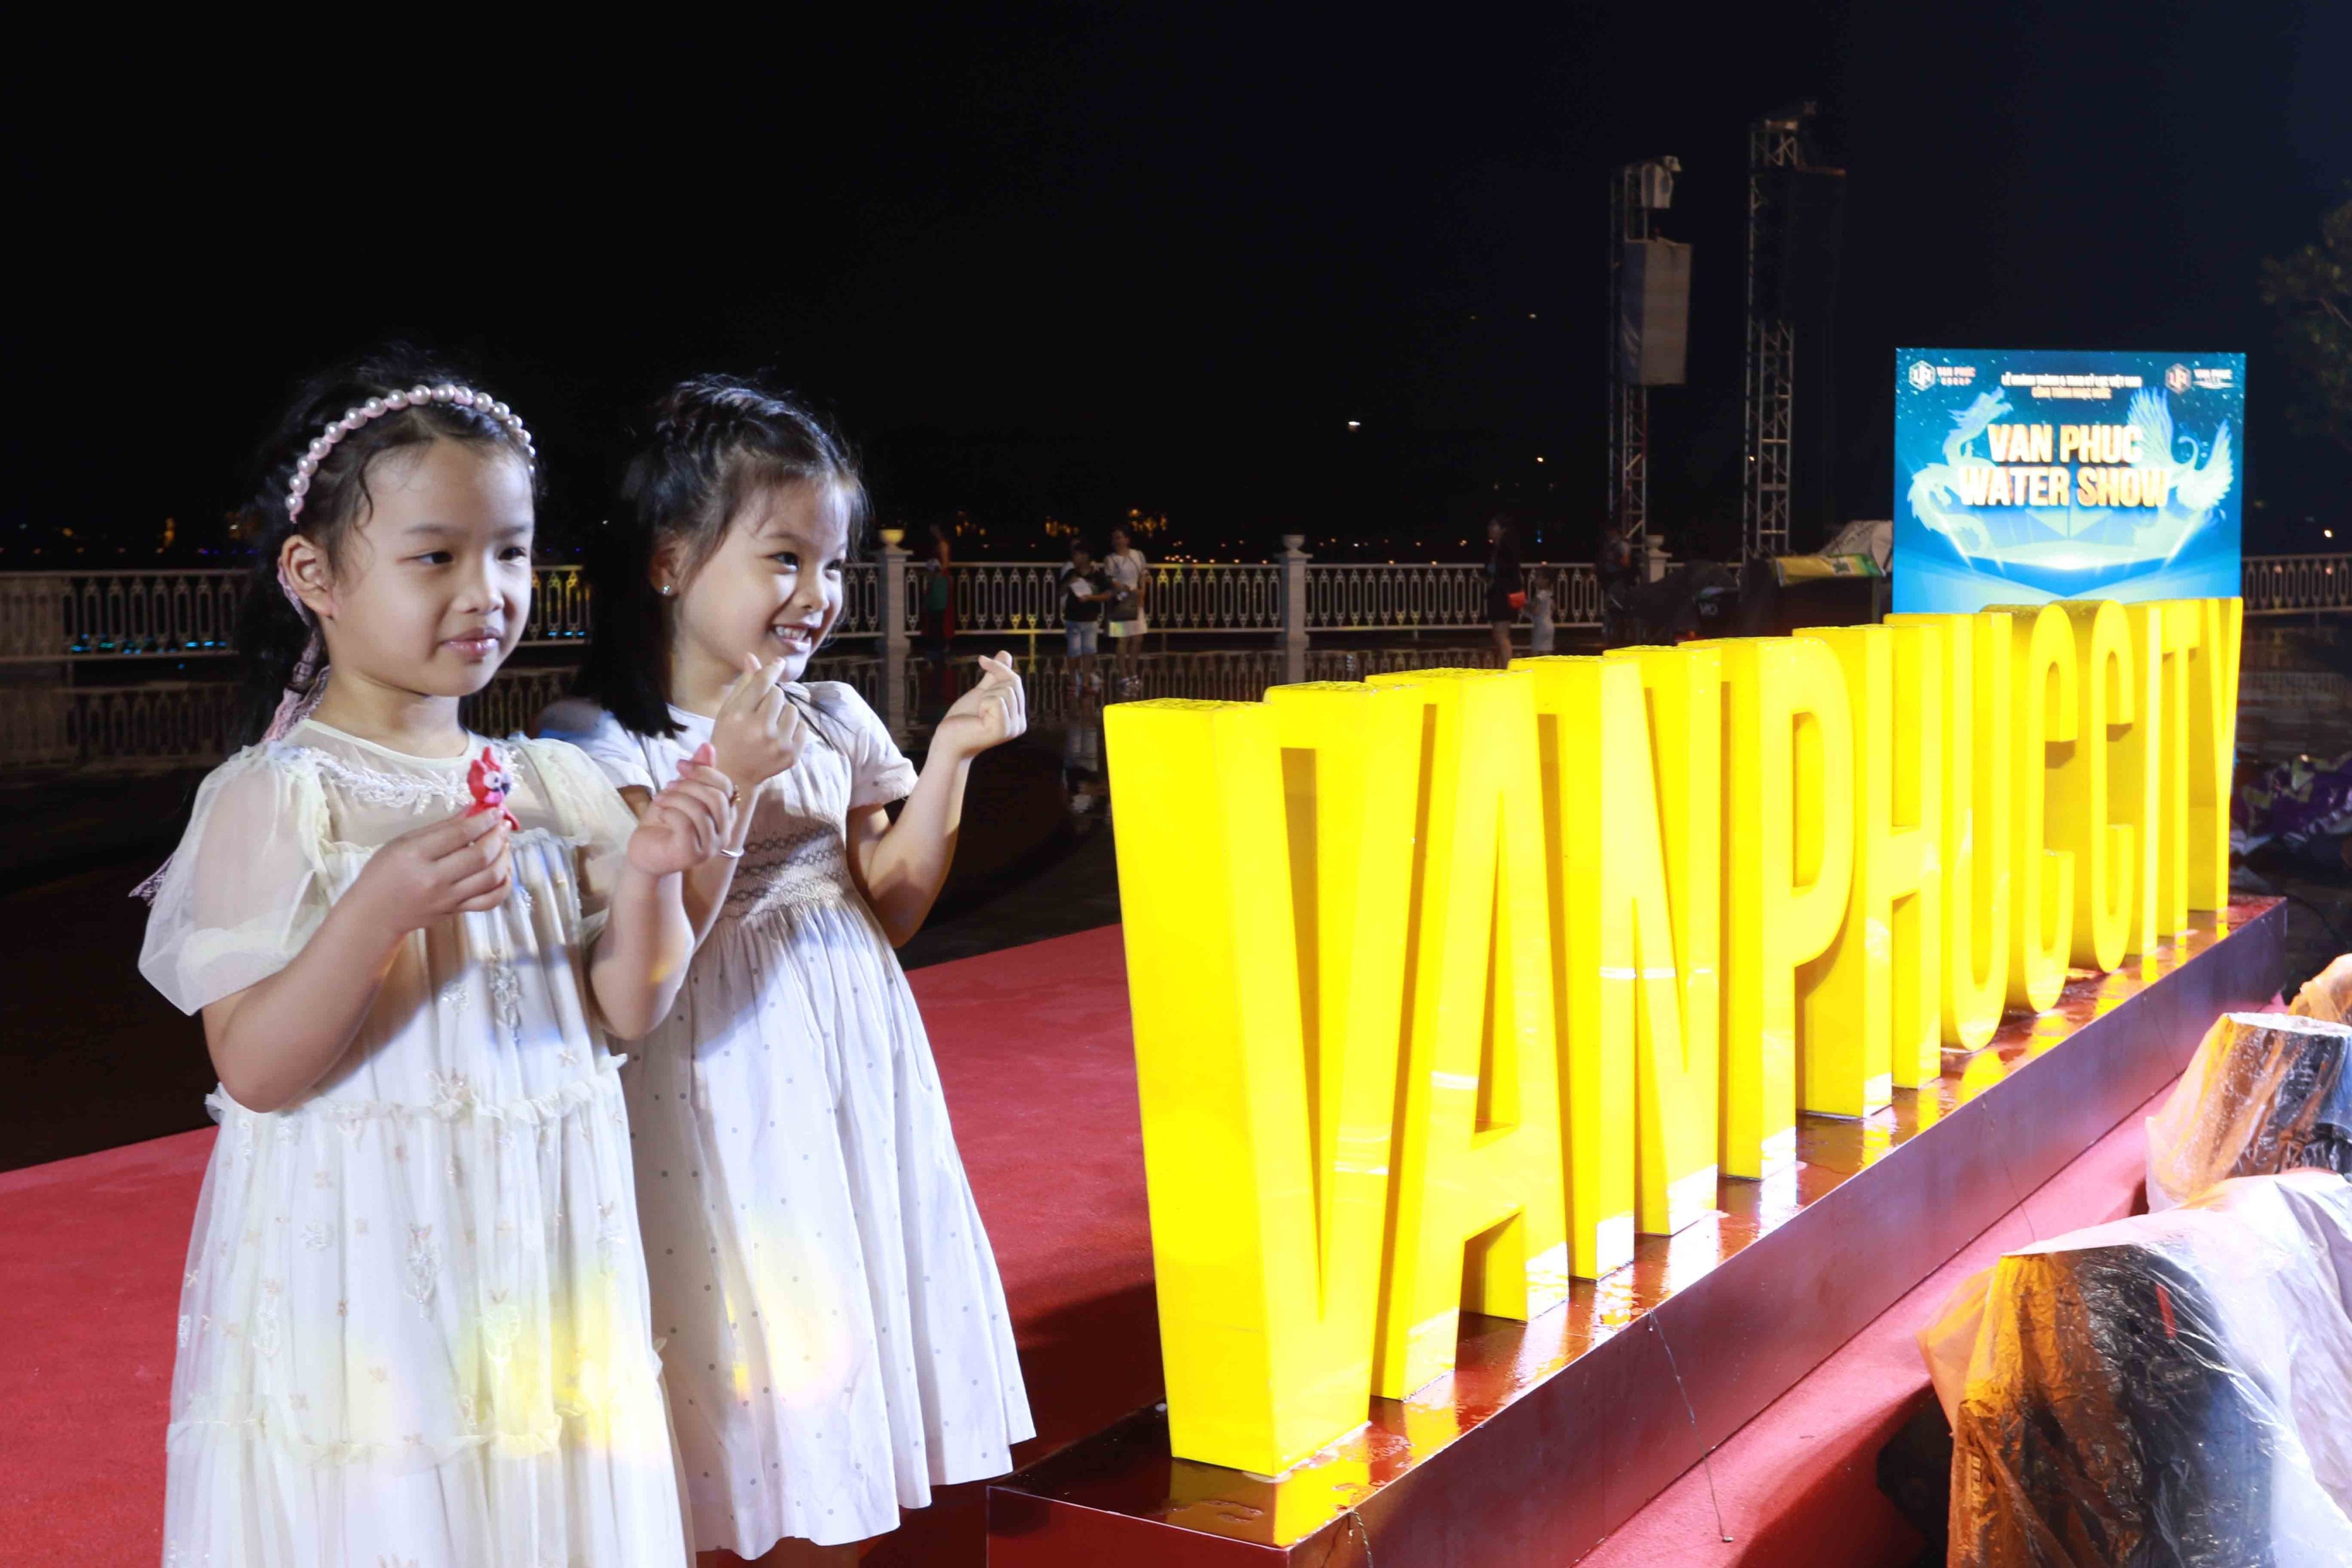 Van Phuc Group khánh thành nhạc nước lớn nhất Việt Nam - ảnh 5